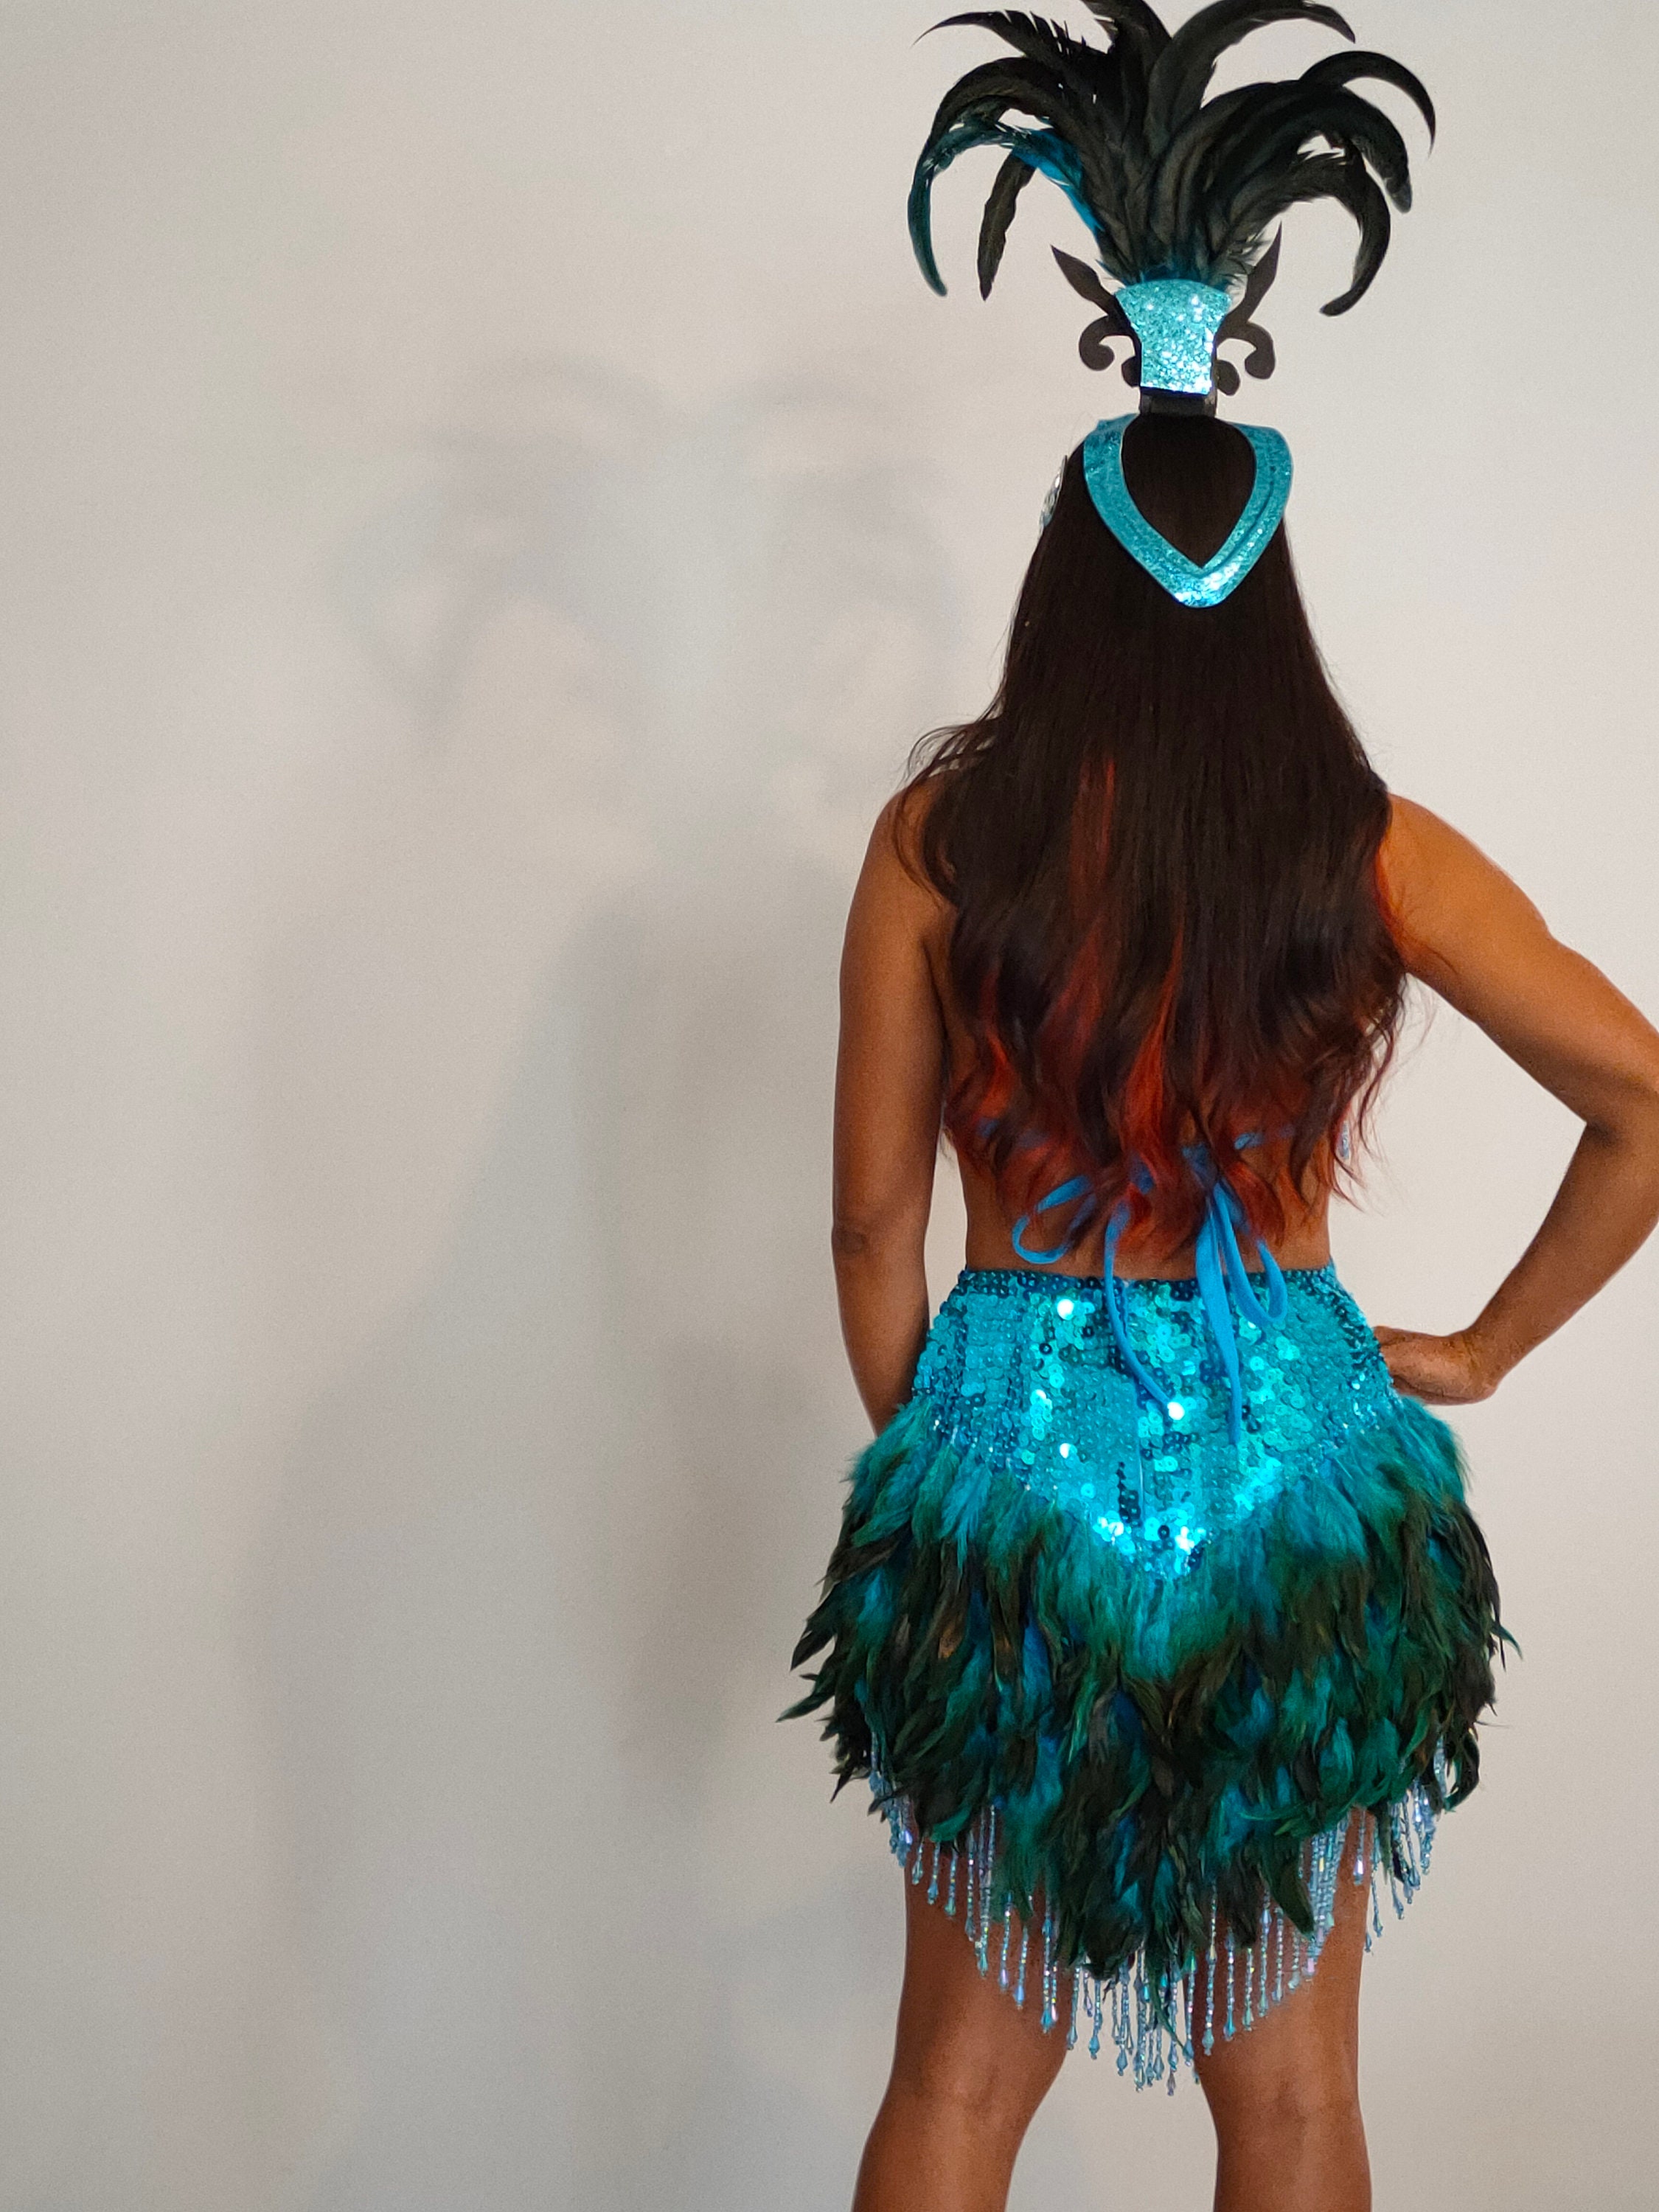 Vestido de plumas de lentejuelas TURQUESA Disfraces de samba Carnival Show  Girl Las Vegas Notting Hill Pride Parade festival School ball Brasil  SkyS-D1-T -  México